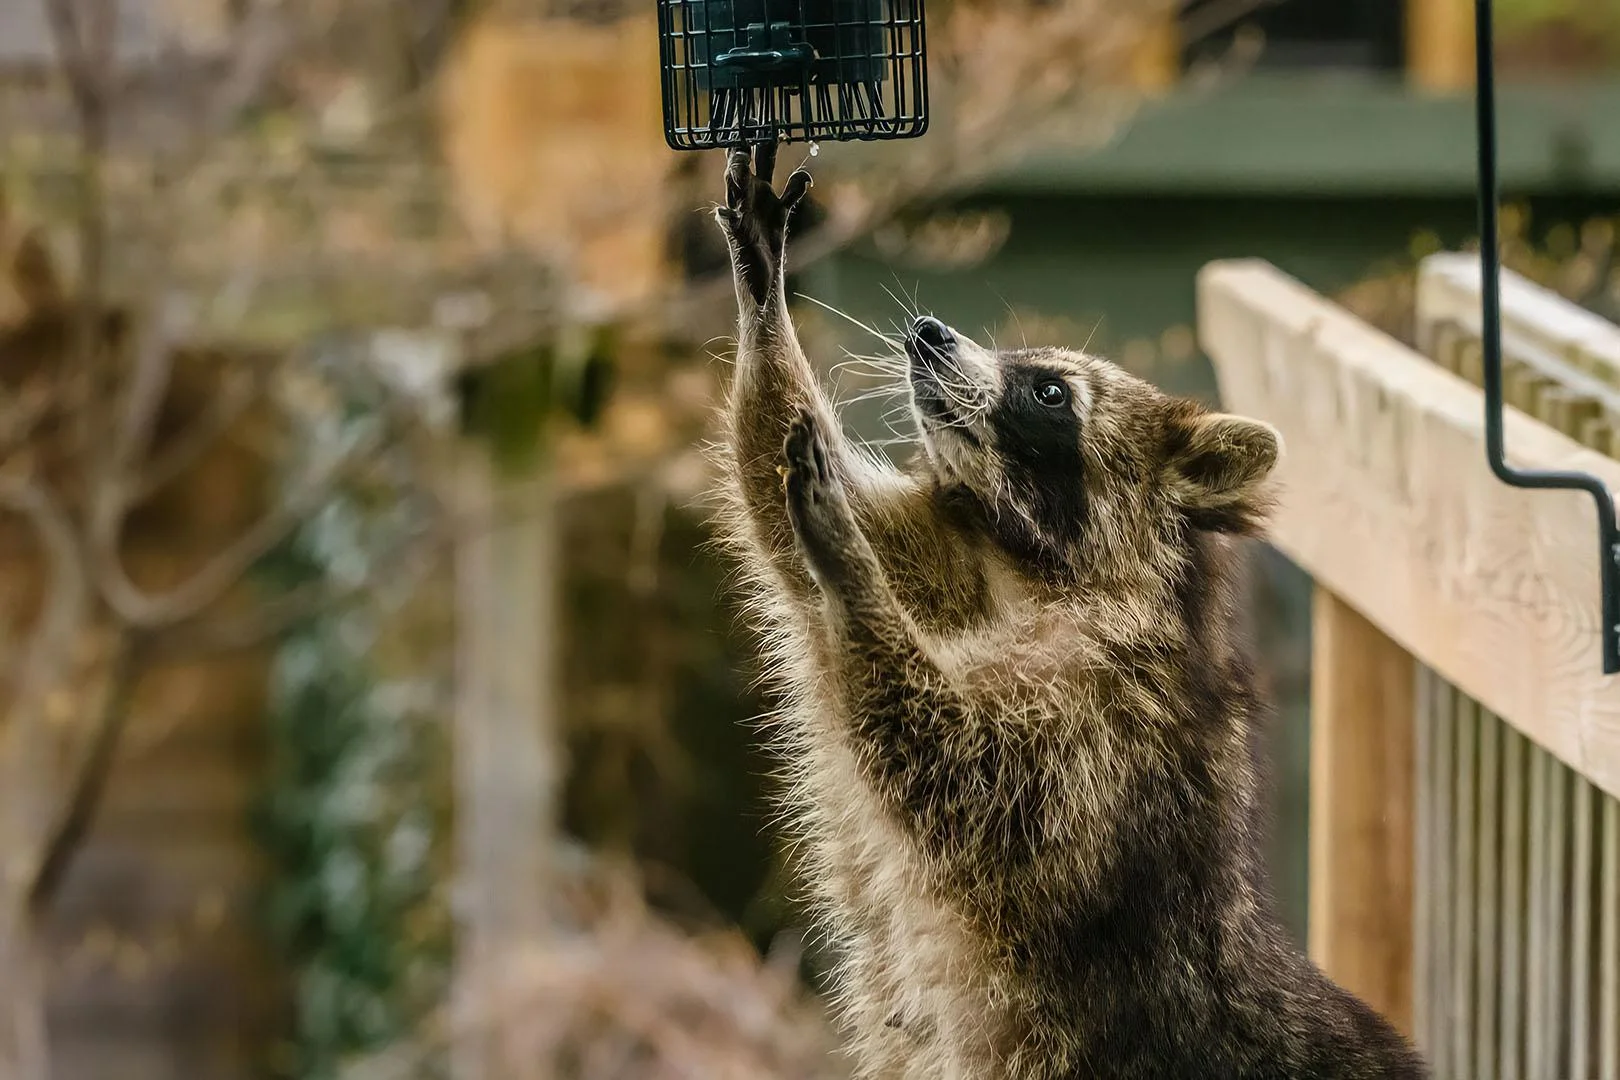 Een mooie foto van een wasbeer die vogeleten steelt.